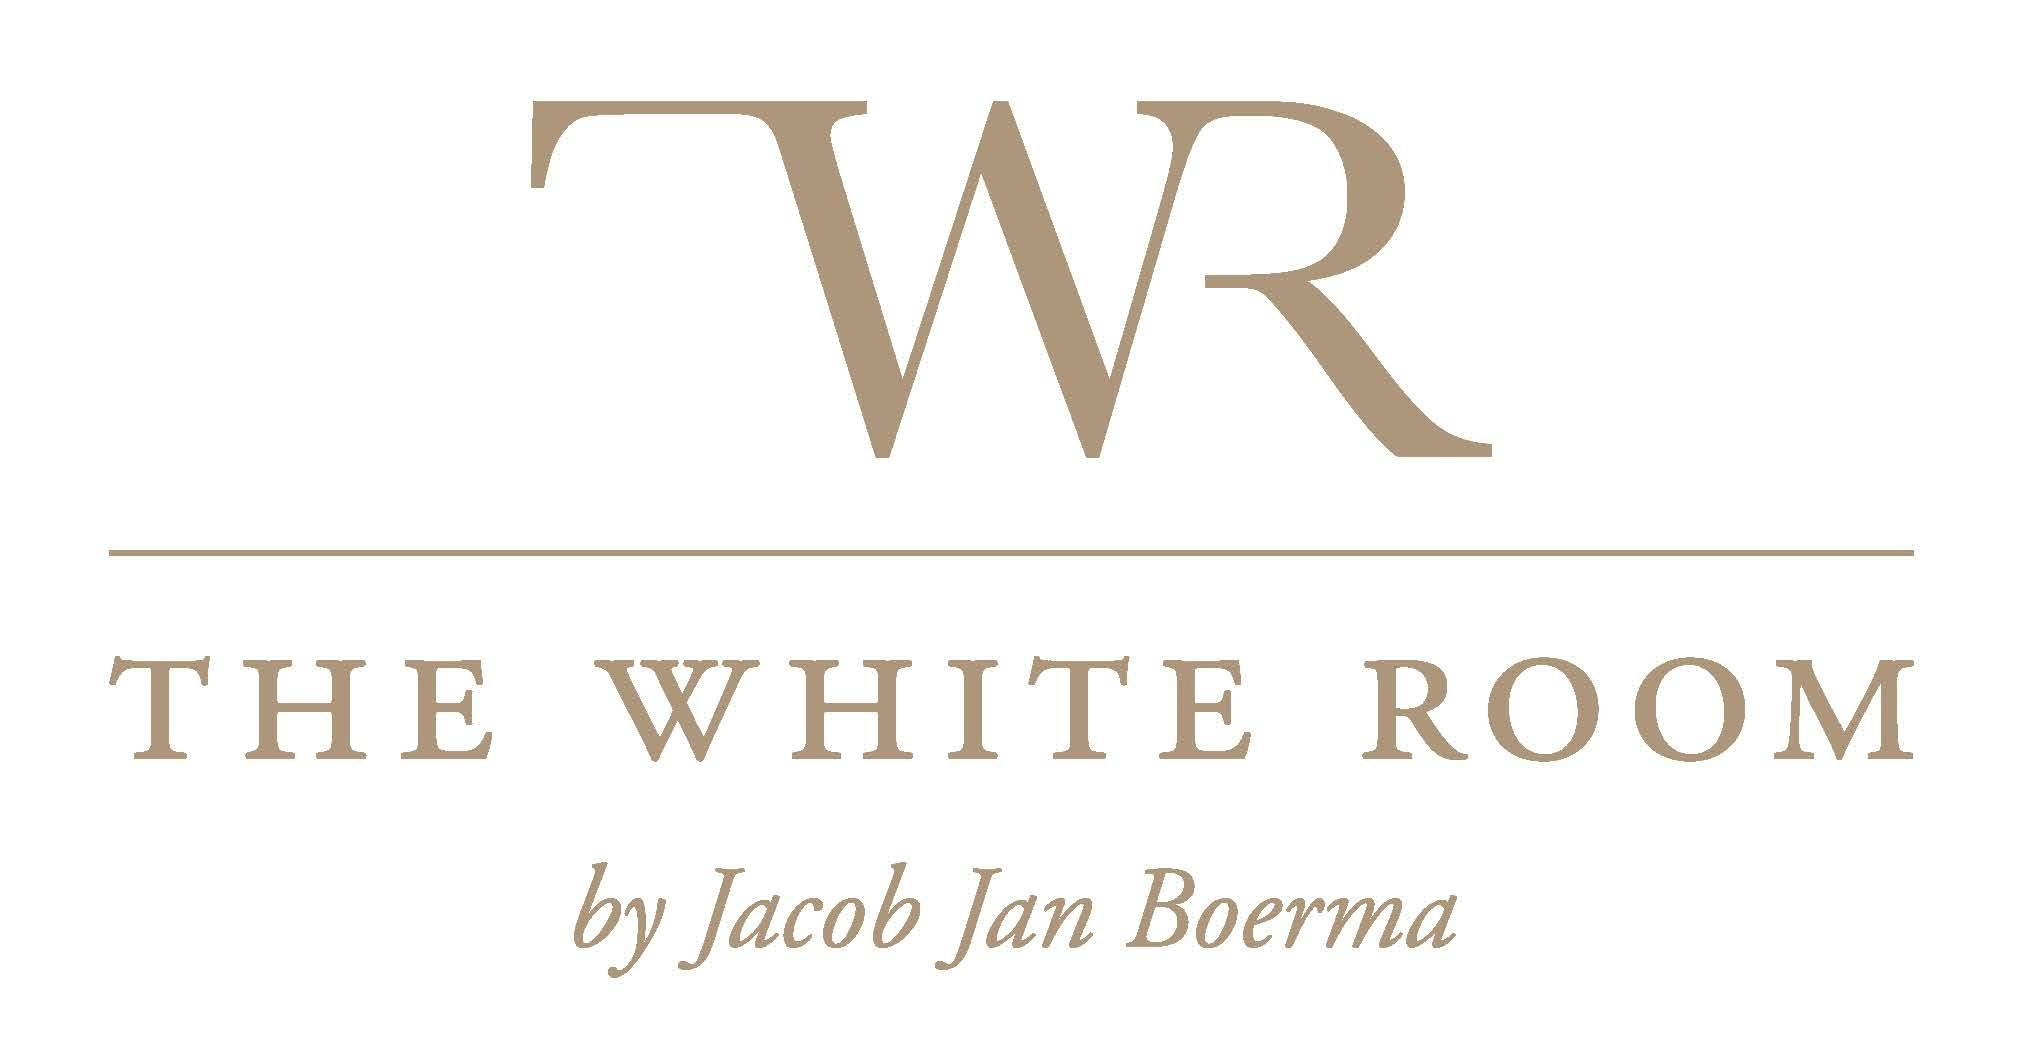 Naam The White Room definitief voor restaurant Jacob Jan Boerma